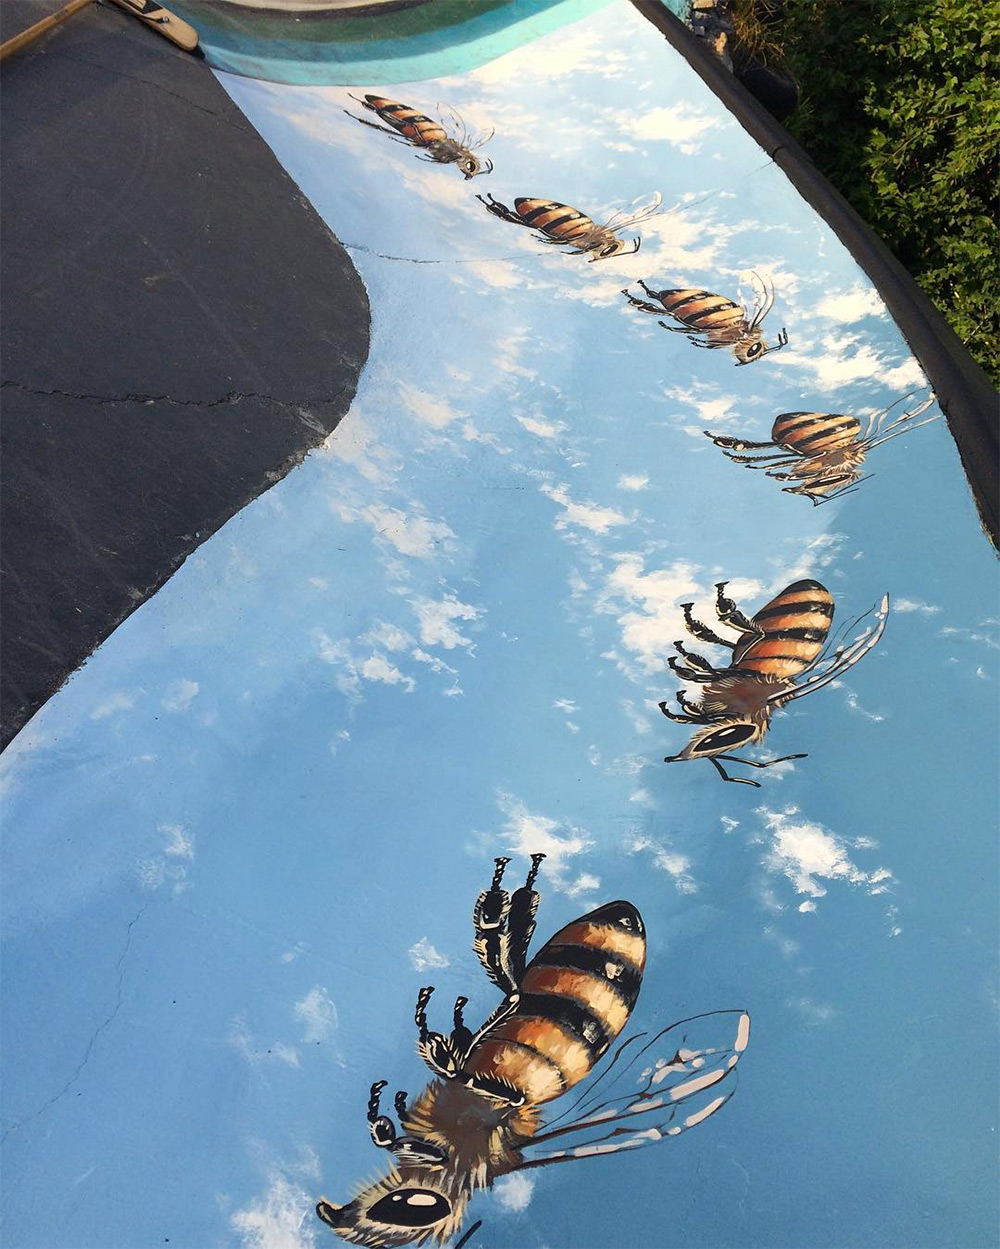 Misi pria bikin lukisan lebah madu di tembok berbagai negara ini mulia